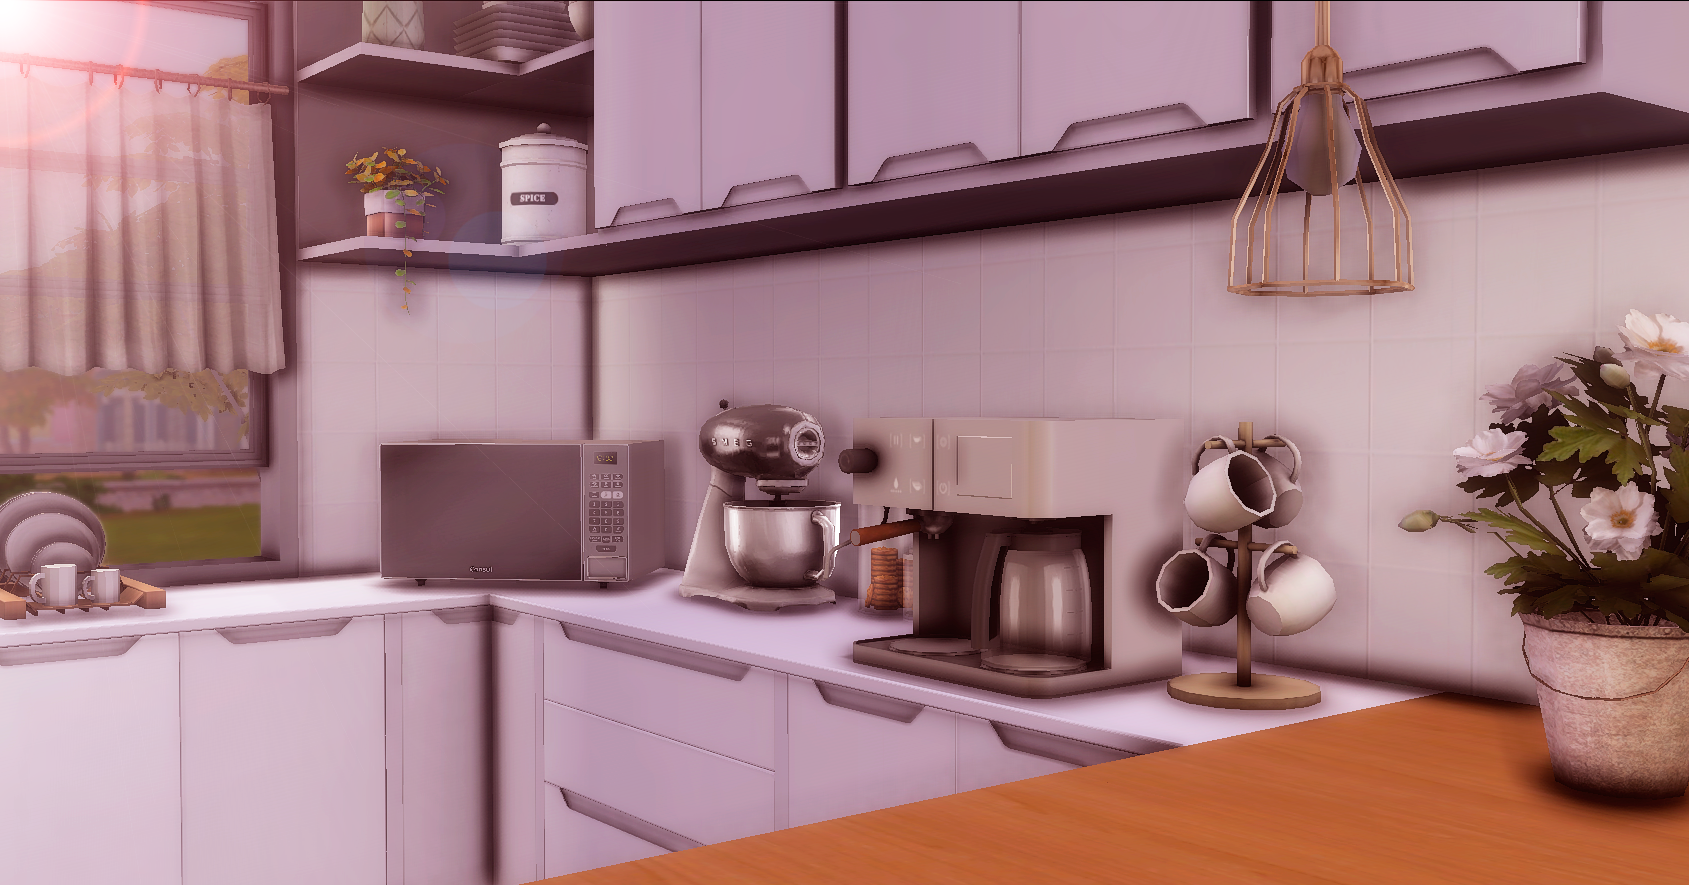 Sims custom kitchen: Bạn yêu thích trò chơi Sims và đam mê nấu ăn? Hãy xem hình ảnh về những căn bếp được trang trí độc đáo trong trò chơi này, đảm bảo bạn sẽ bị cuốn hút bởi sự sáng tạo và tinh tế trong thiết kế! Translation: Do you love The Sims game and have a passion for cooking? Check out the images of unique and custom-designed kitchens in this game, guaranteed to engage you with its creativity and sophistication!